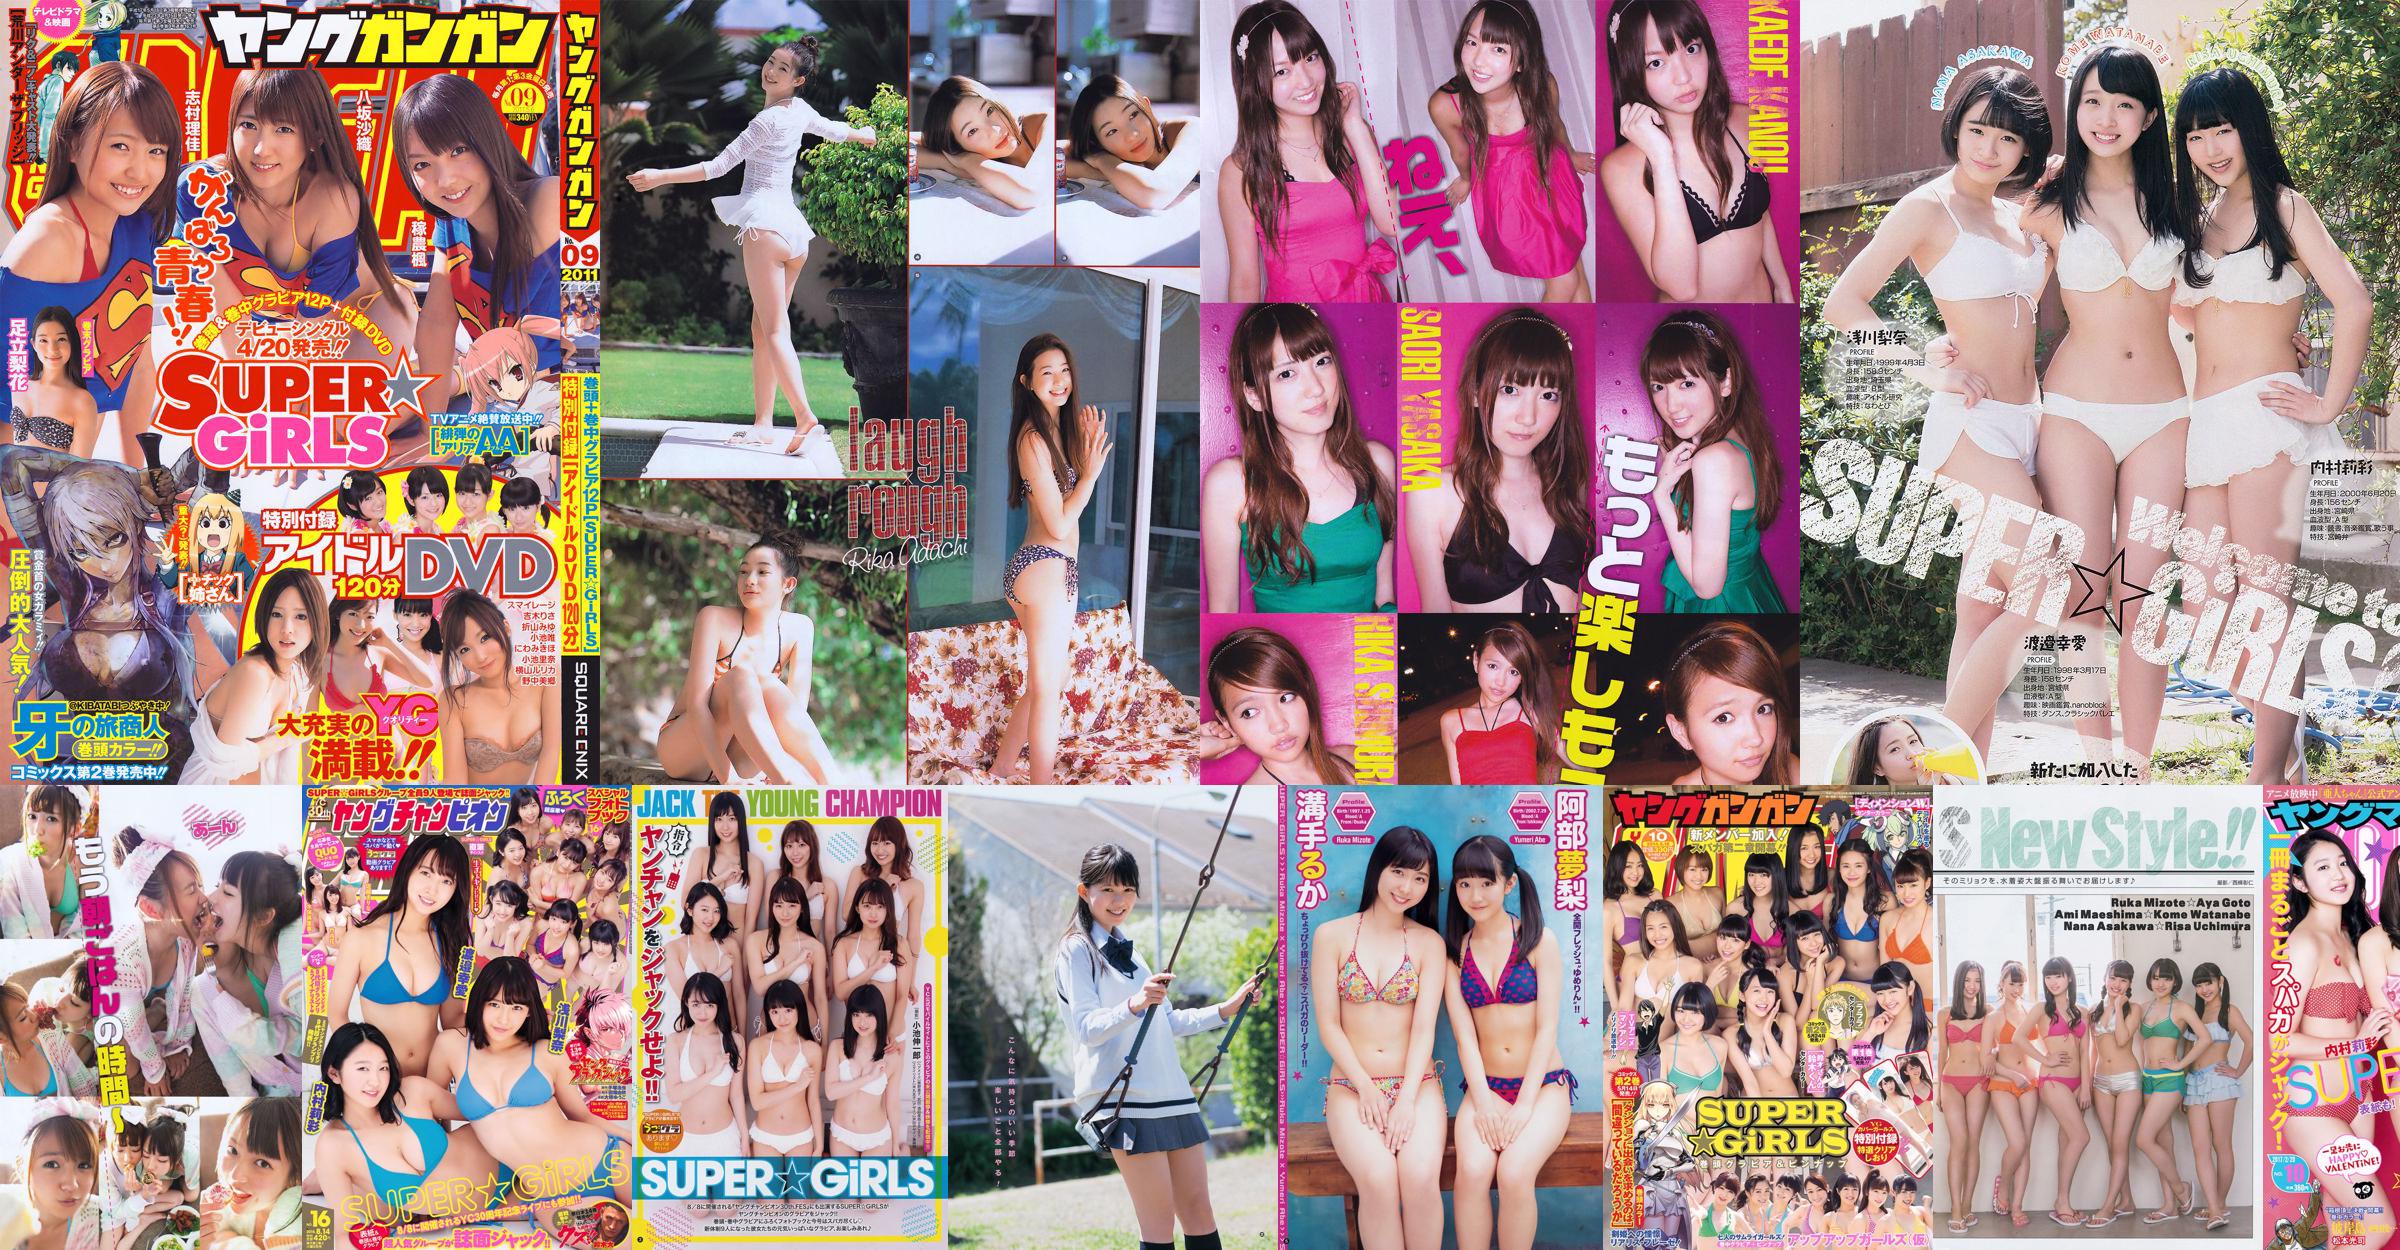 [Young Gangan] SUPER ☆ GiRLS Momose Misaki 2011 No.14 Photo Magazine No.dbab1a Trang 4